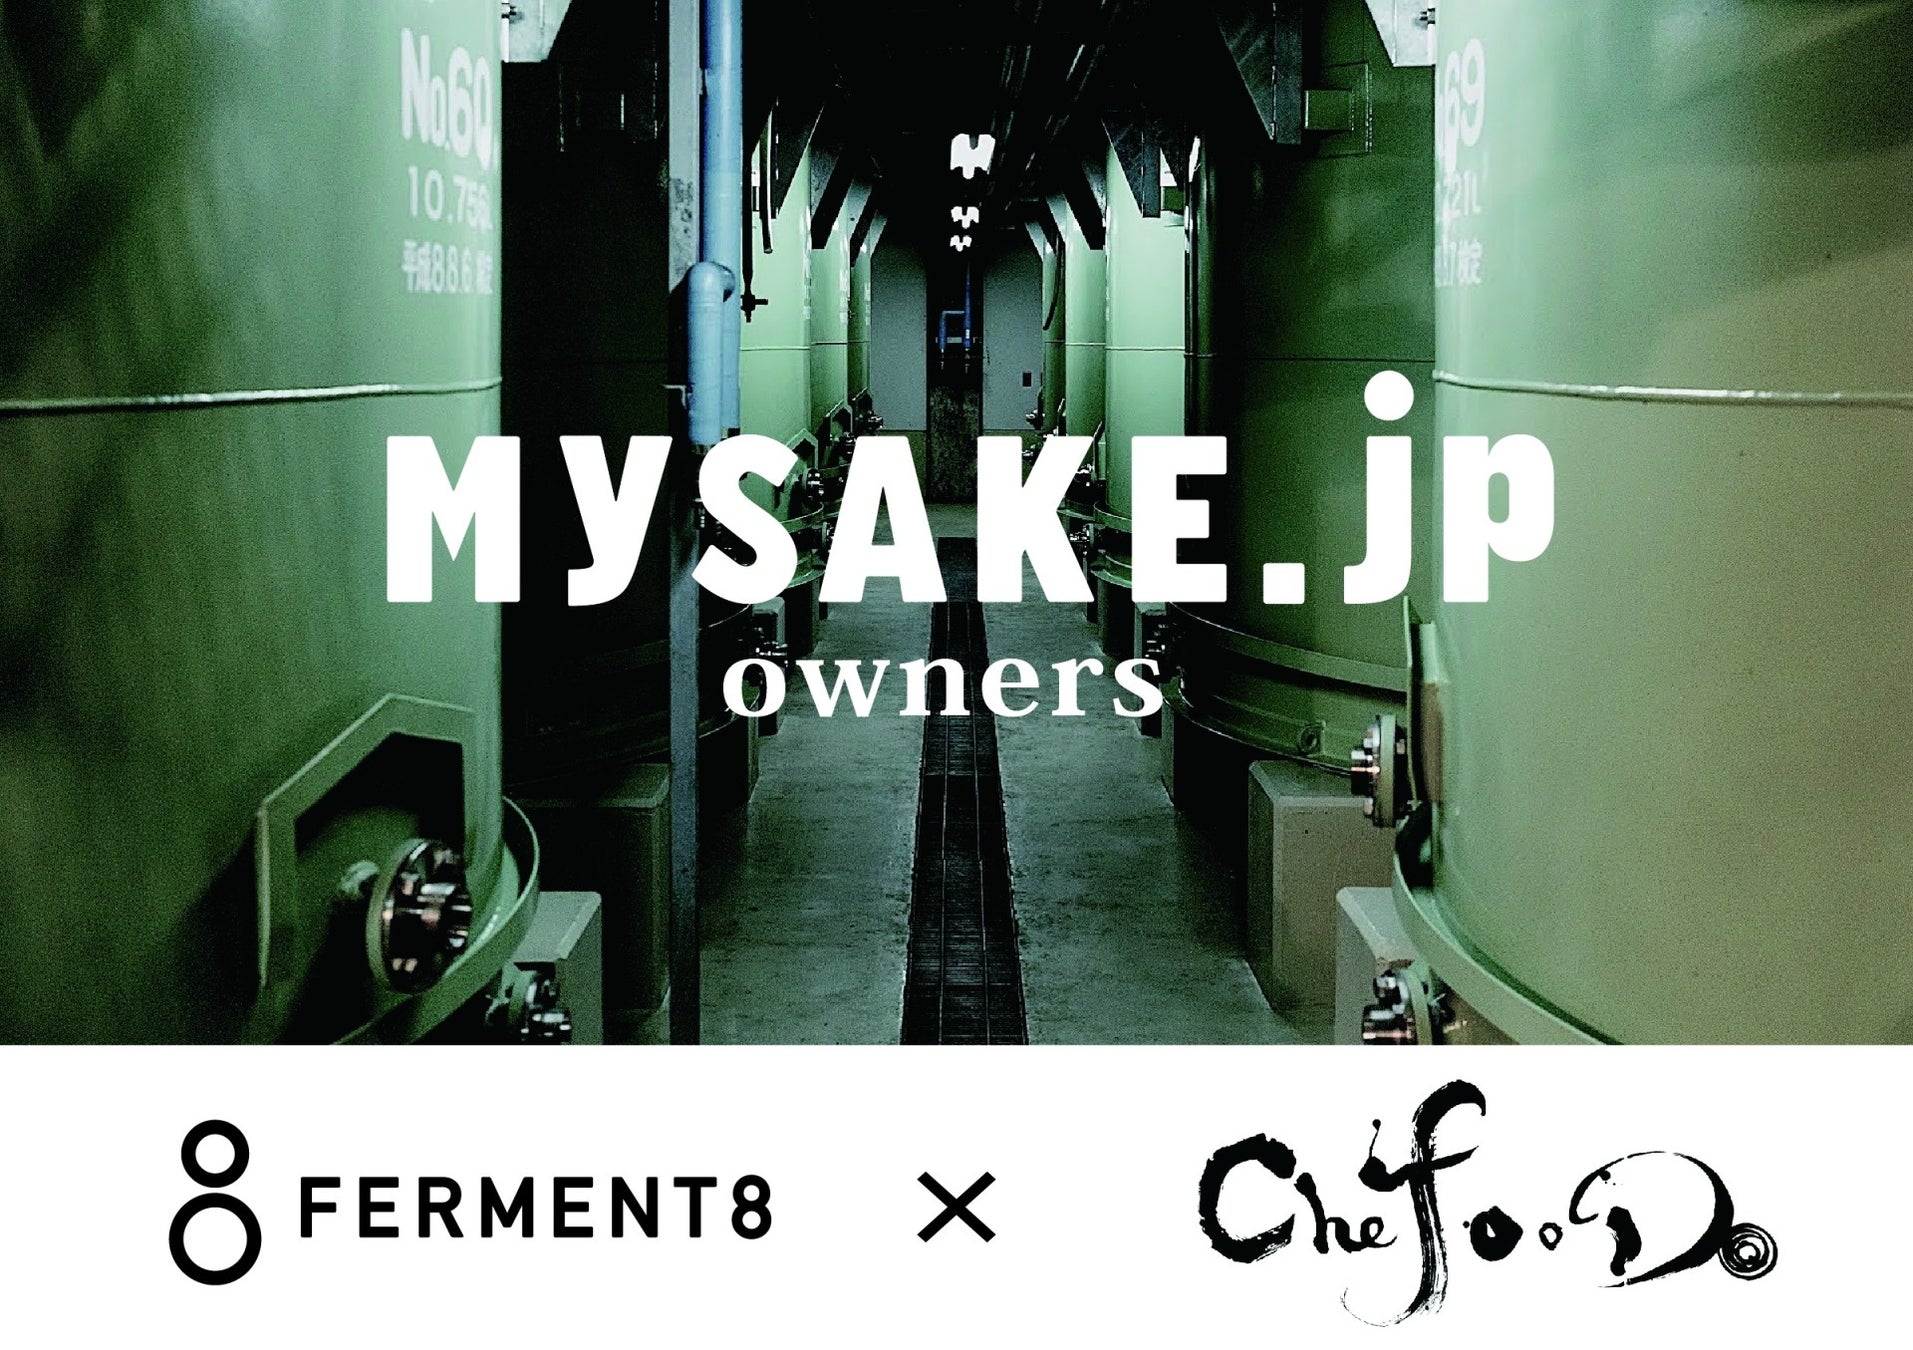 海外レストランにローカライズした日本酒タンクオーダーシステムを展開。FERMENT8とChefooDoが日本酒オーダーシステム「MySAKE.jp」を活用した海外展開に向け業務提携を締結